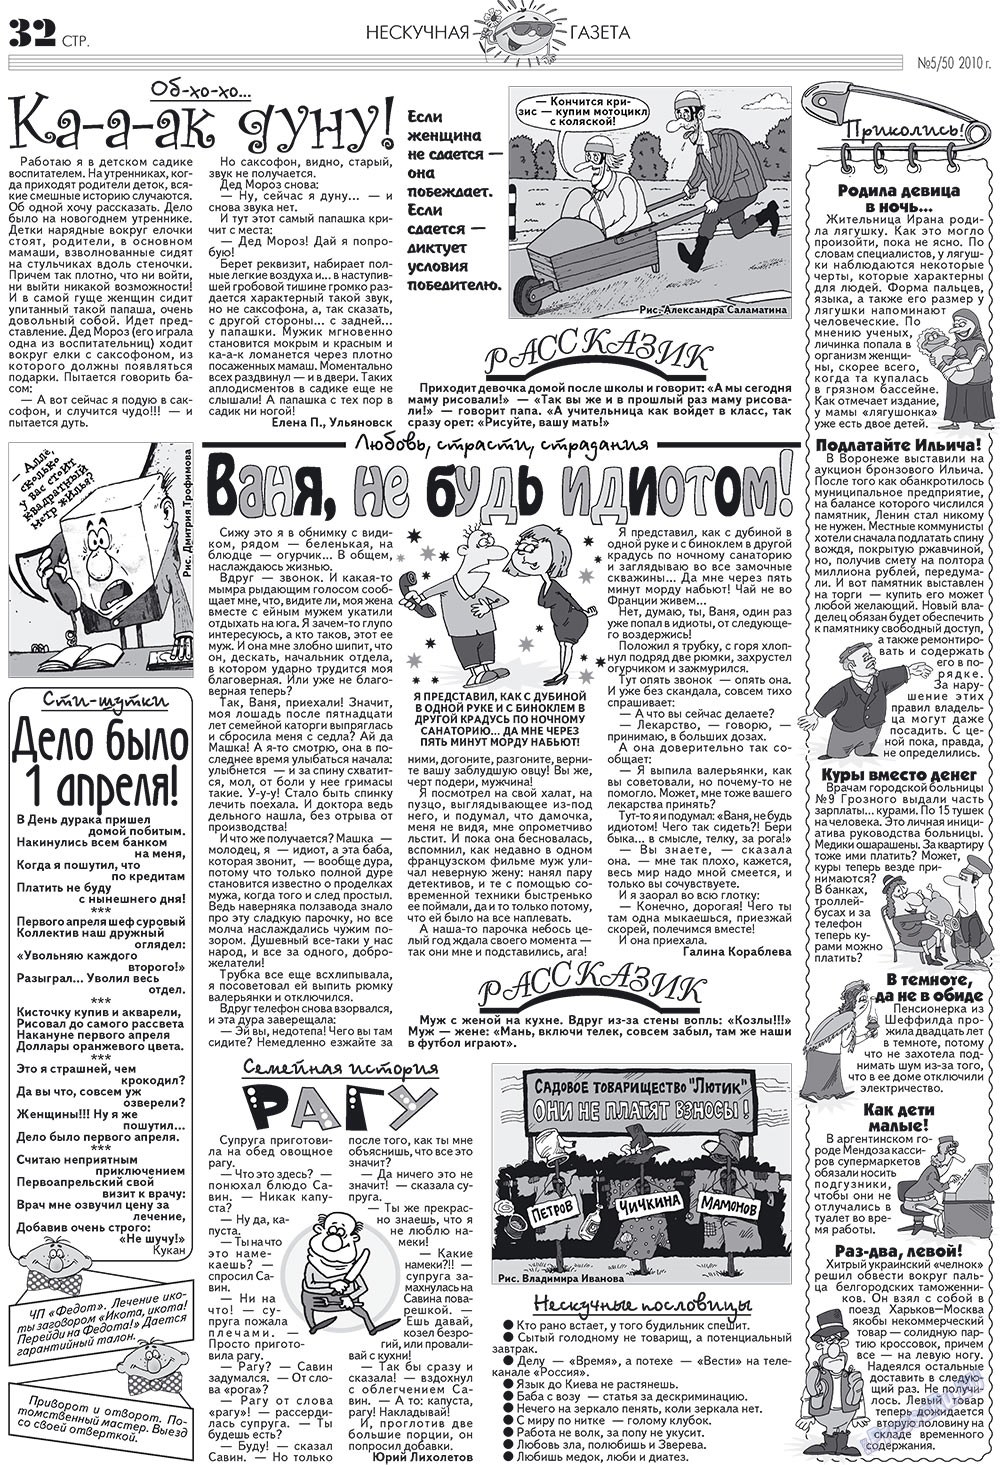 Нескучная газета (журнал). 2010 год, номер 5, стр. 28